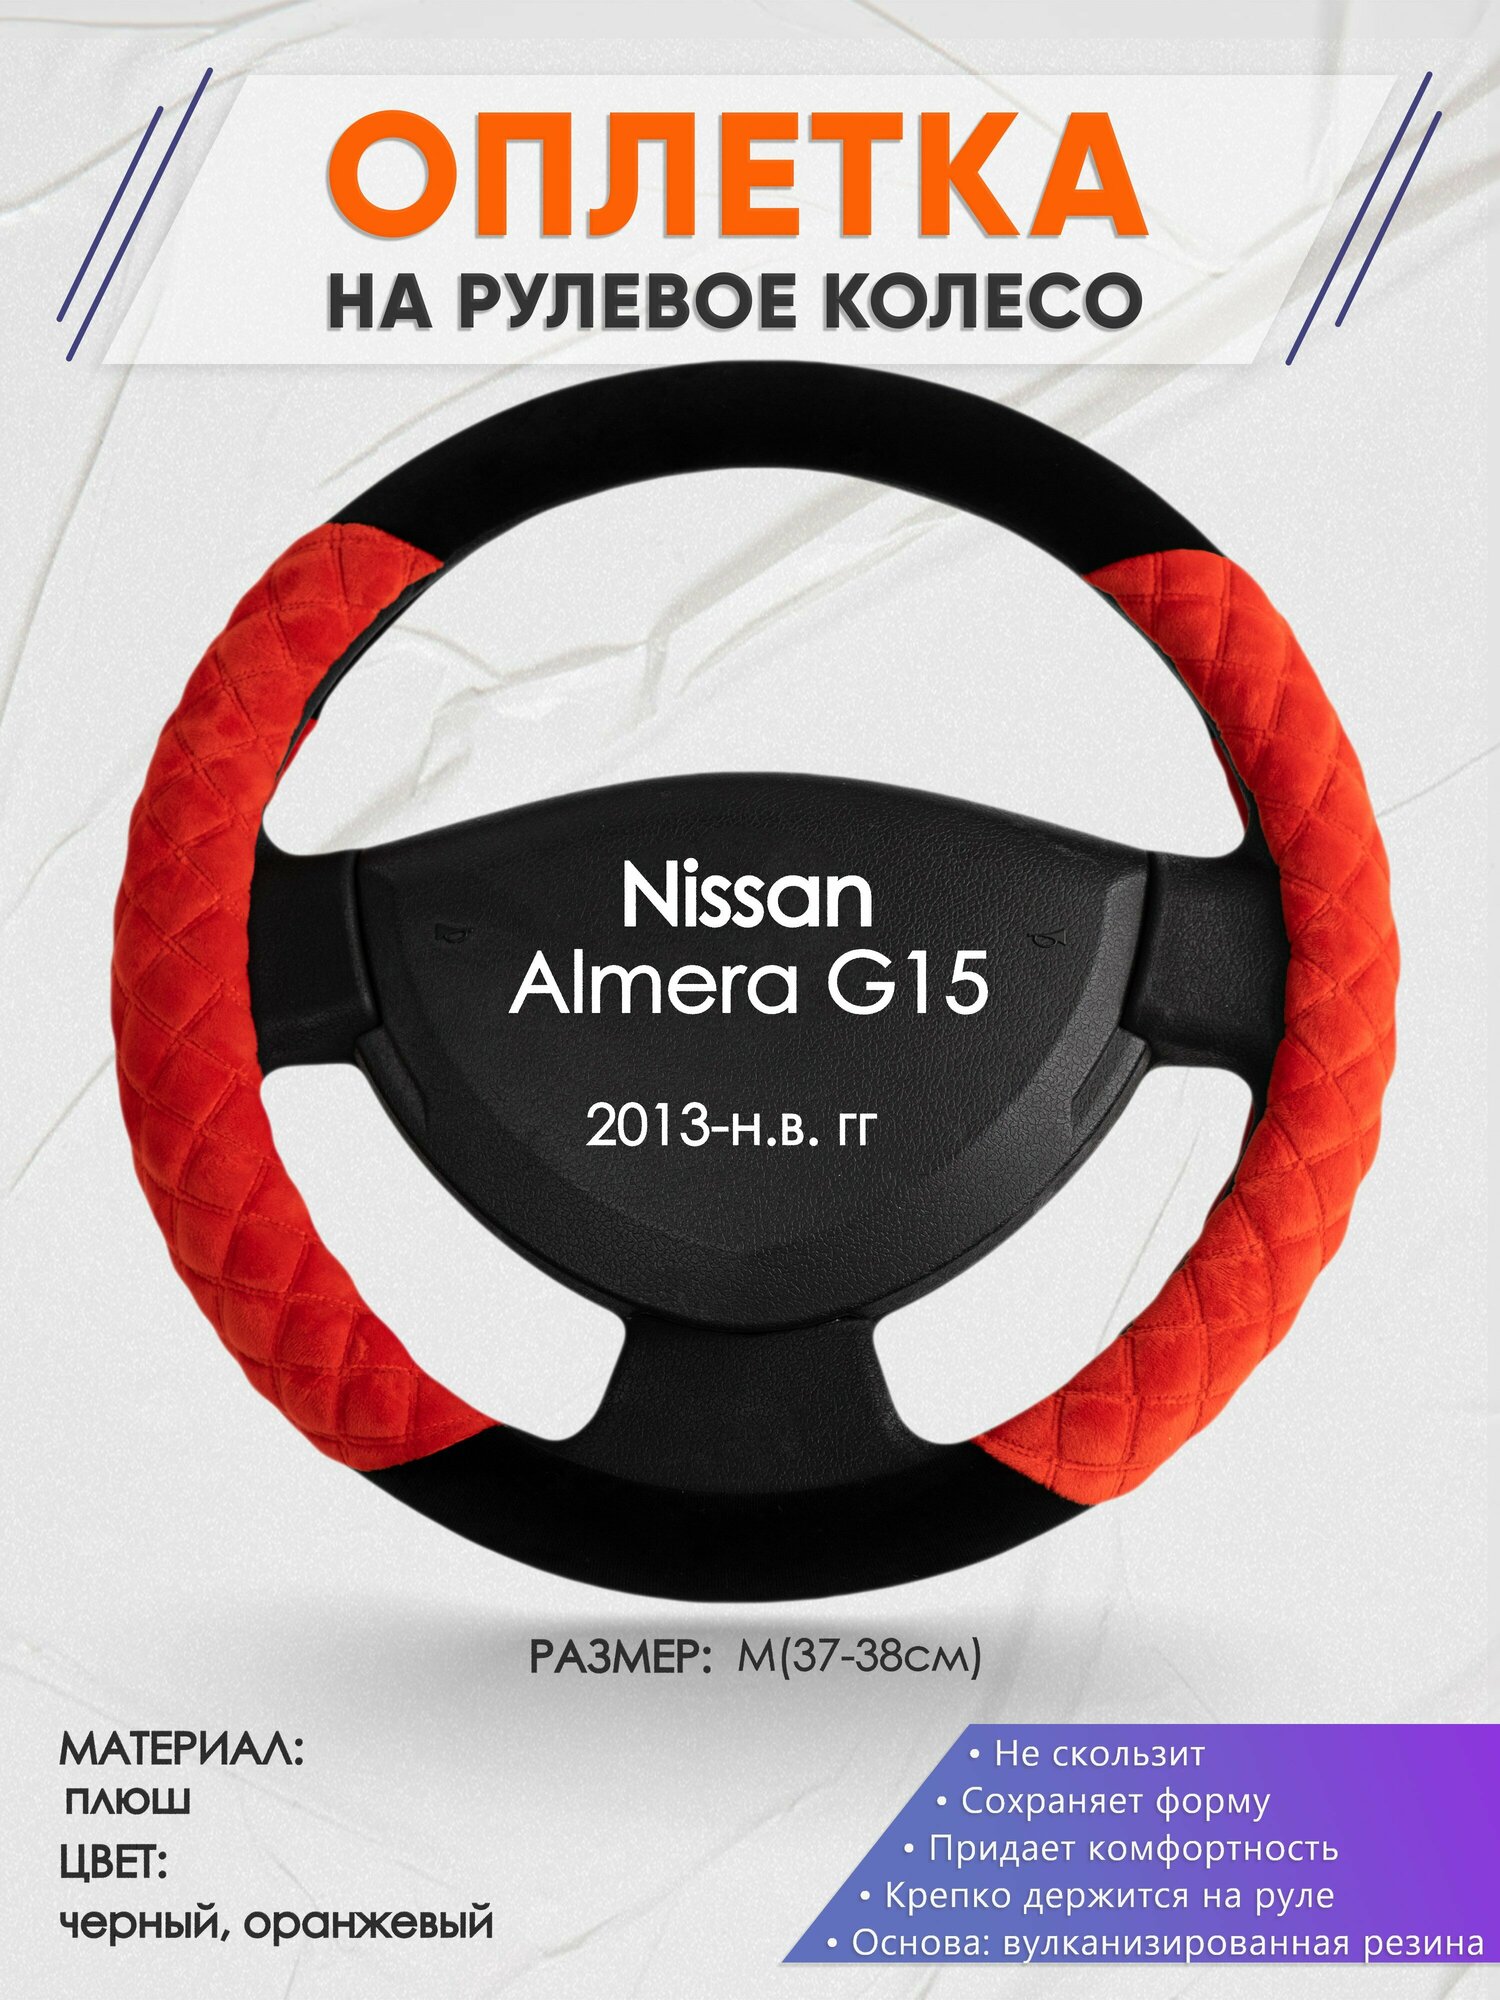 Оплетка на руль для Nissan Almera G15(Ниссан Альмера) 2013-н. в, M(37-38см), Замша 37